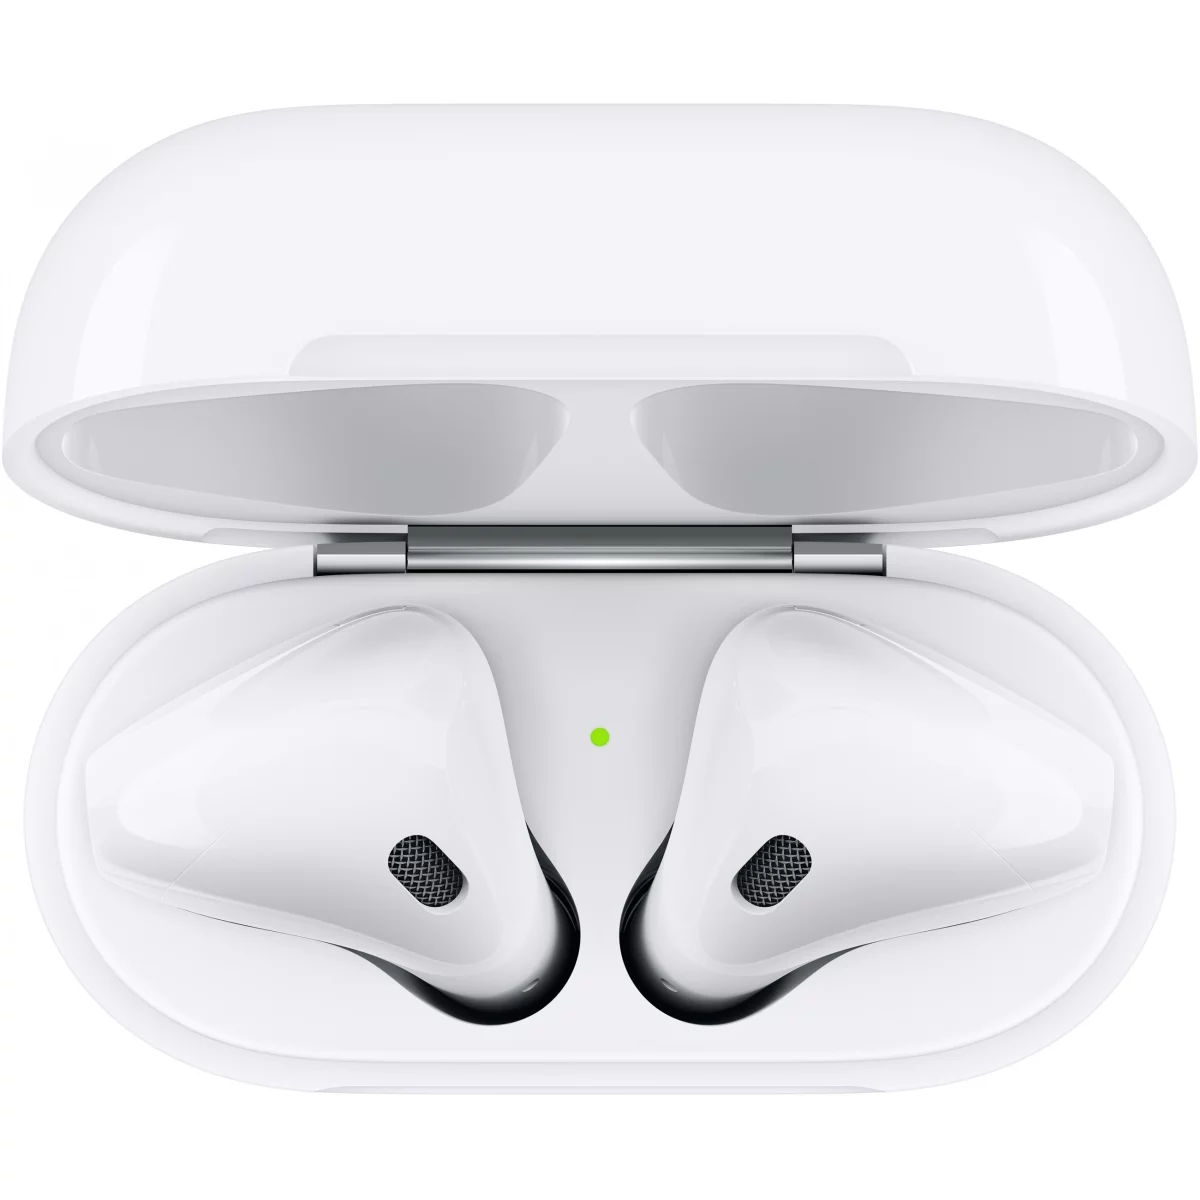 Apple AirPods (2nd generation) AirPods Kopfhörer True Wireless Stereo (TWS) im Ohr Anrufe/Musik Bluetooth Weiß